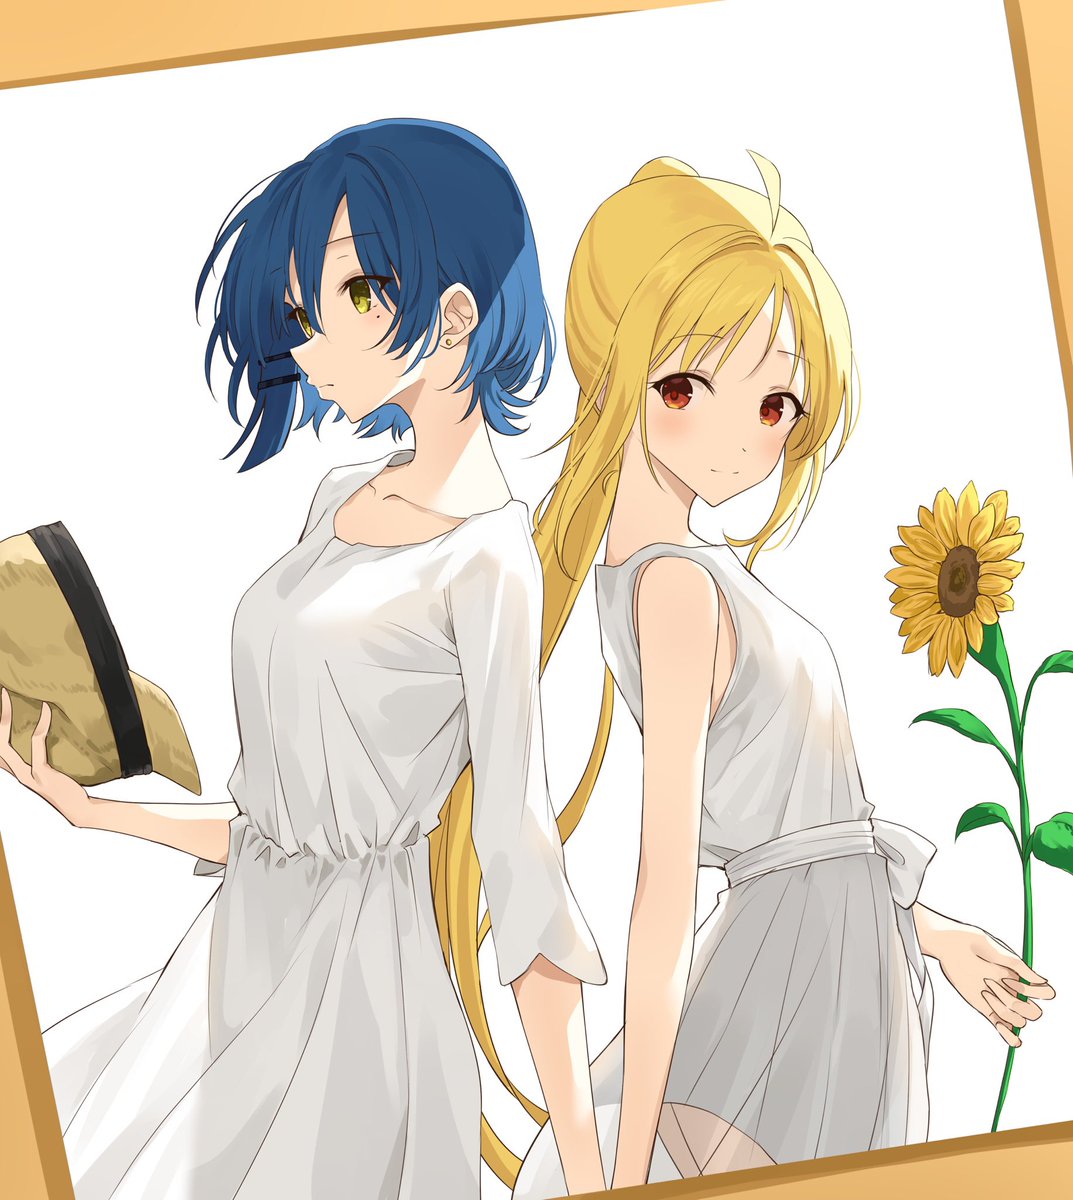 ijichi nijika multiple girls 2girls sunflower flower blonde hair long hair dress  illustration images